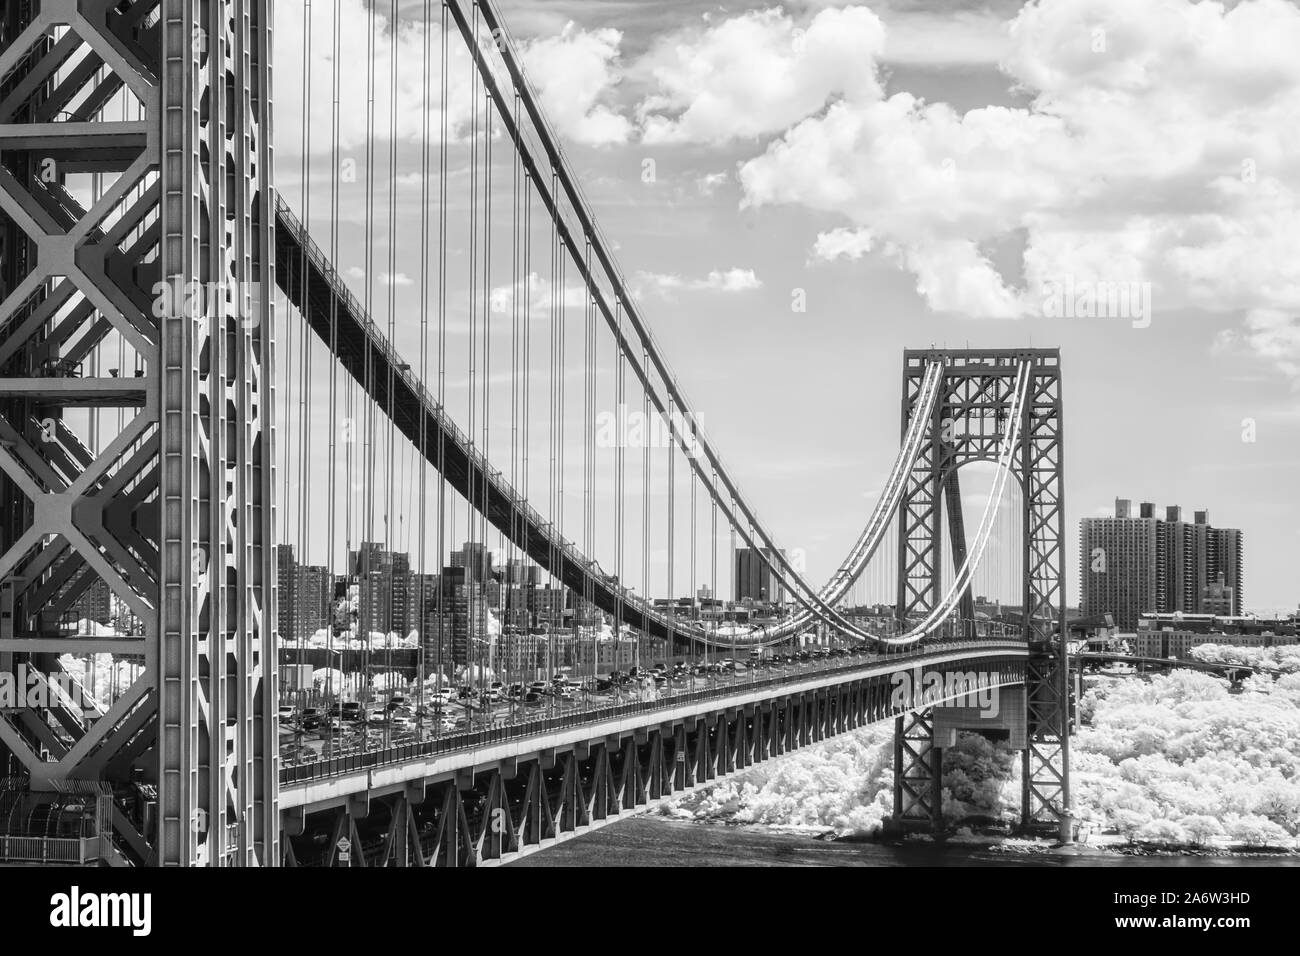 Die George Washington Bridge GWB NYC - Ein infared schwarz-weiß Bild von der George Washington Brücke während des Sommers mit puffy Clouds. Dieses Bild, das ich Stockfoto